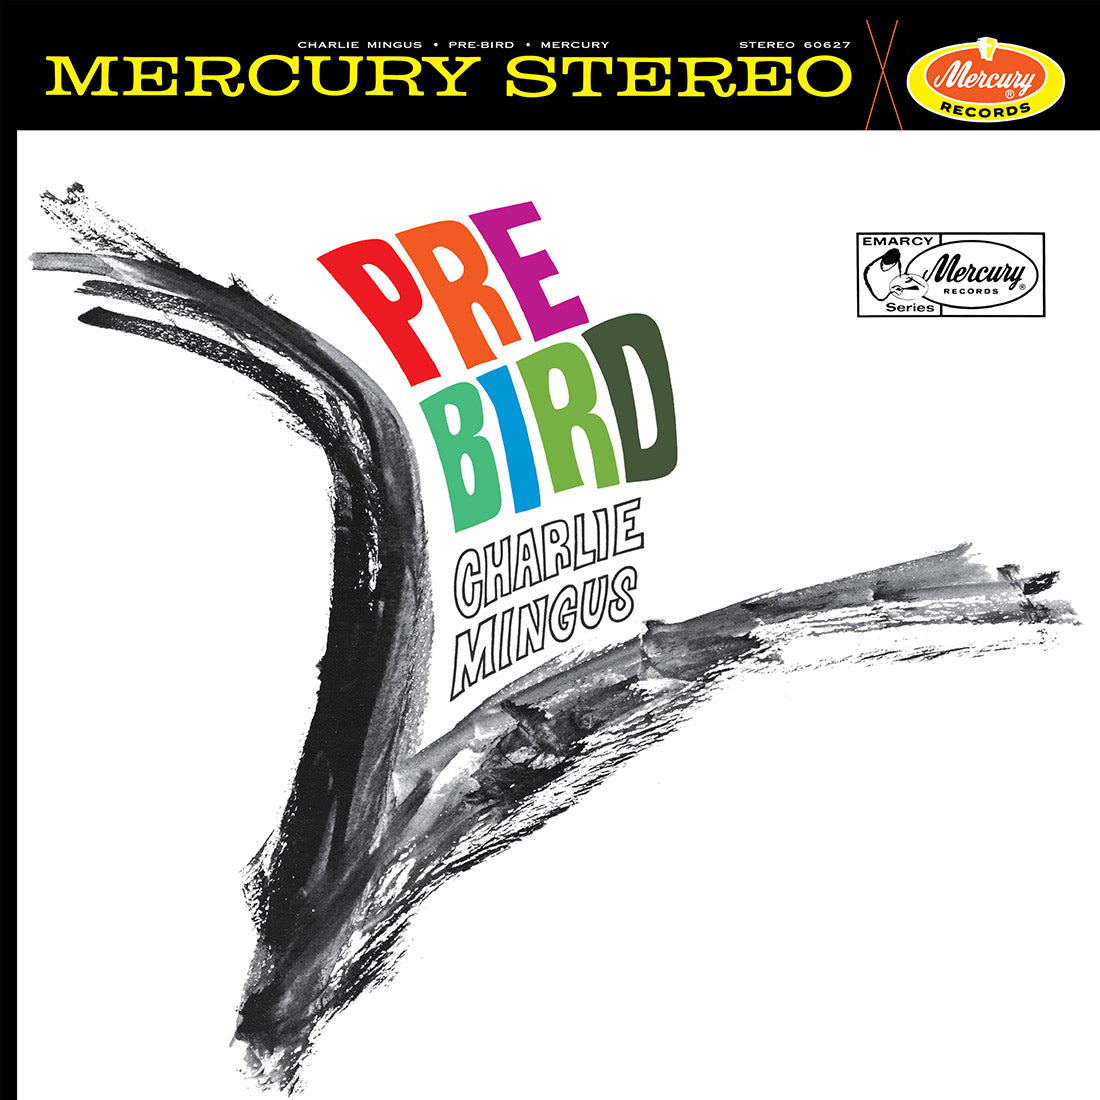 Charles Mingus - Pre-Bird (Acoustic Sounds): Vinyl LP